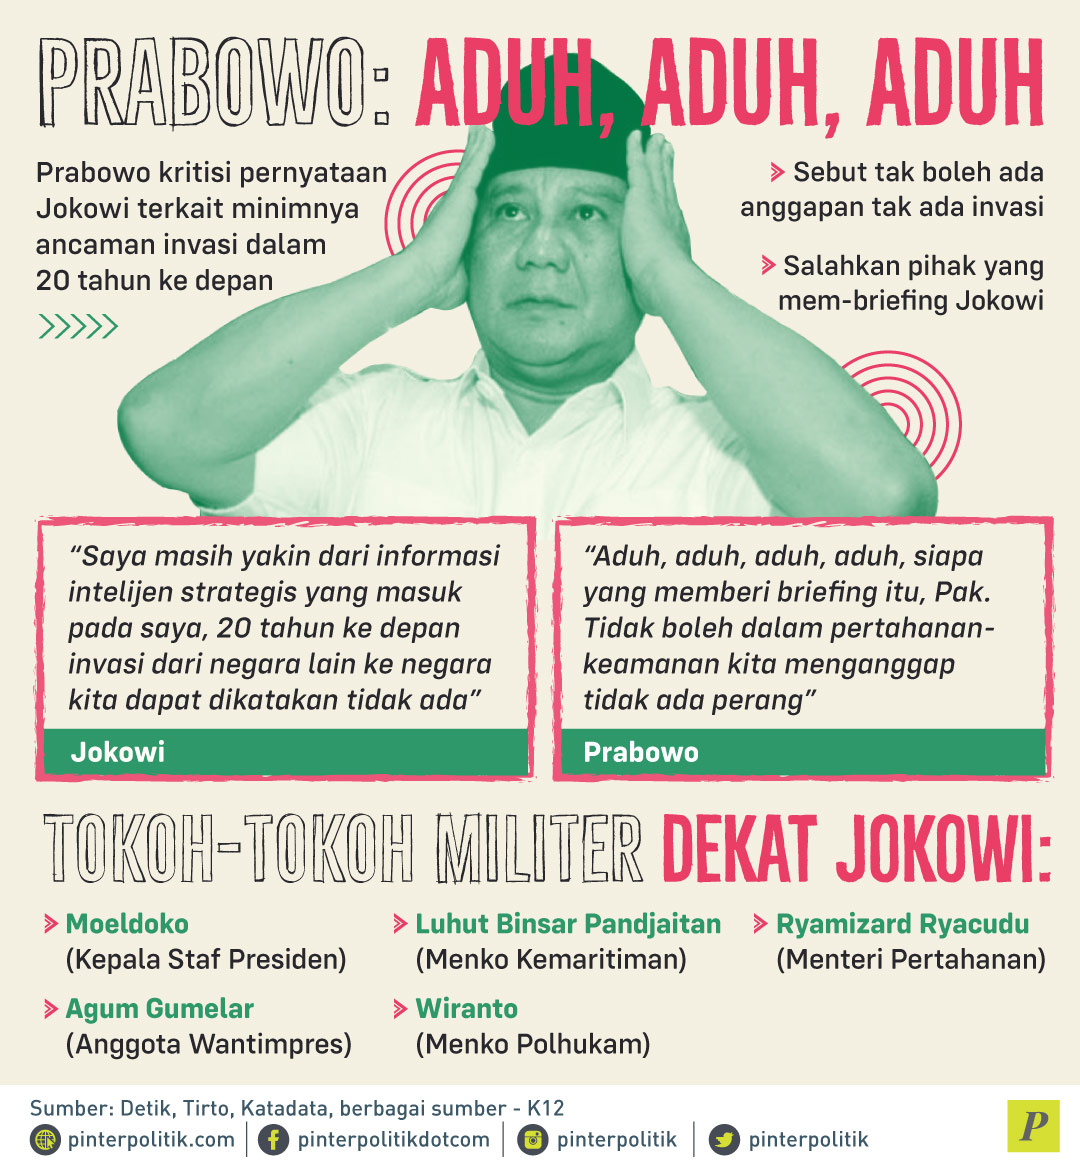 Prabowo kritisi pernyataan Jokowi minimnya ancaman invasi militer